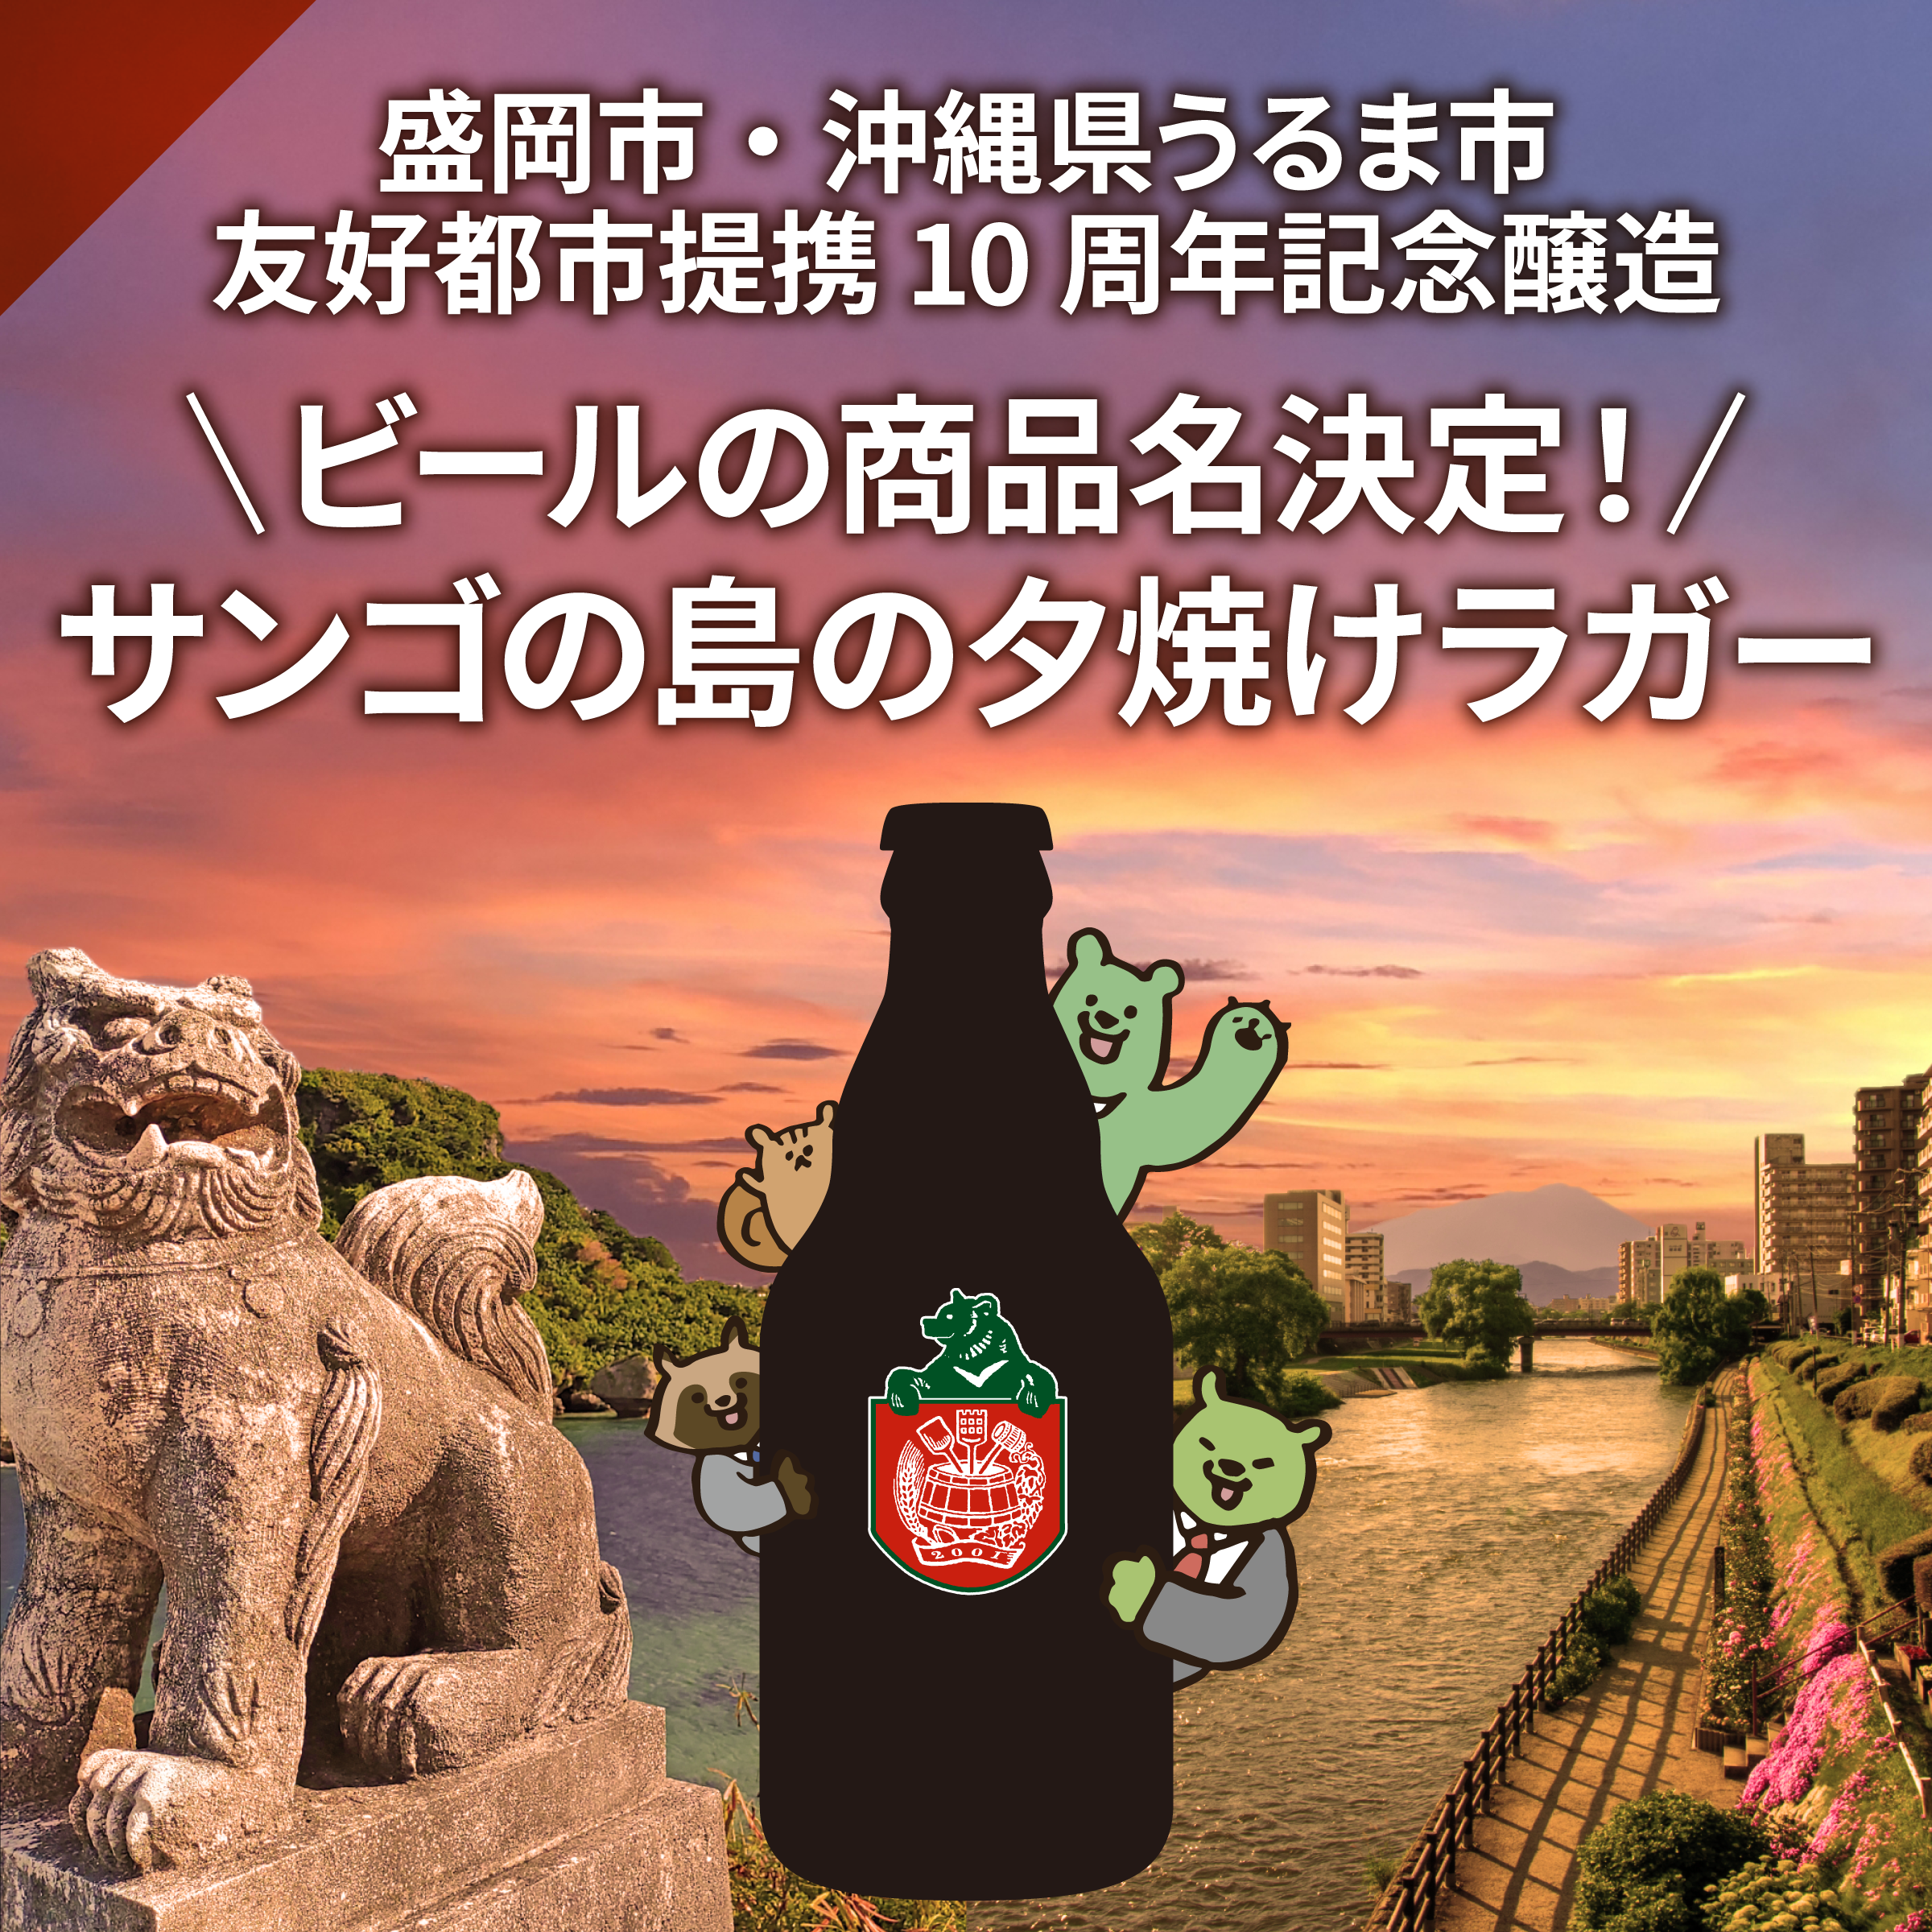 盛岡市・うるま市友好都市提携10周年記念ビールの名称は「サンゴの島の夕焼けラガー」に決定しました！